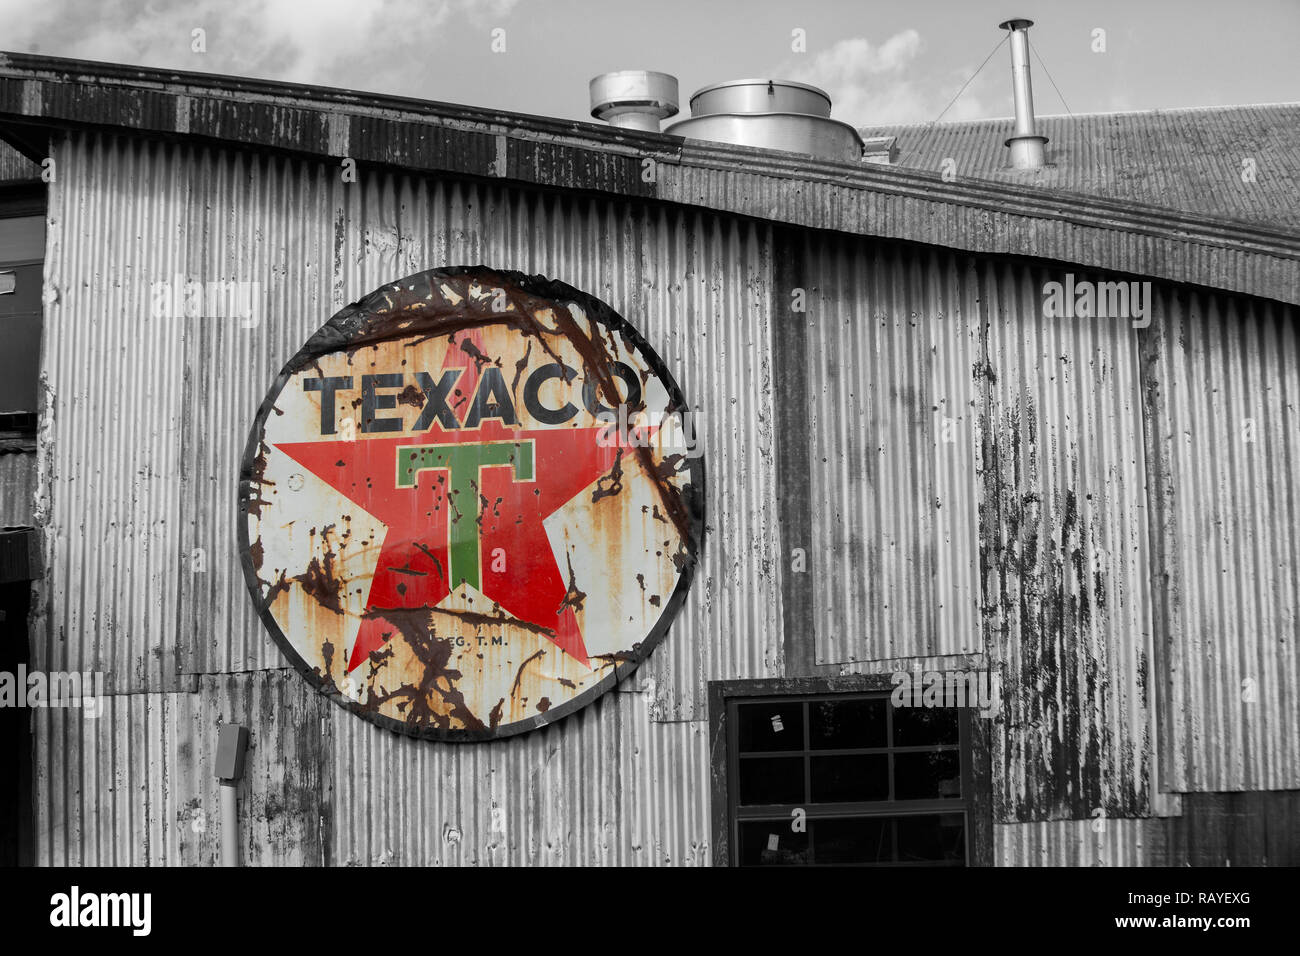 Verwitterte Texaco unterzeichnen. Texaco, Inc. ("Texas") ist eine US-amerikanische Öl Tochtergesellschaft der Chevron Corporation. Anmelden Farbe Gebäude in Schwarz und wh Stockfoto